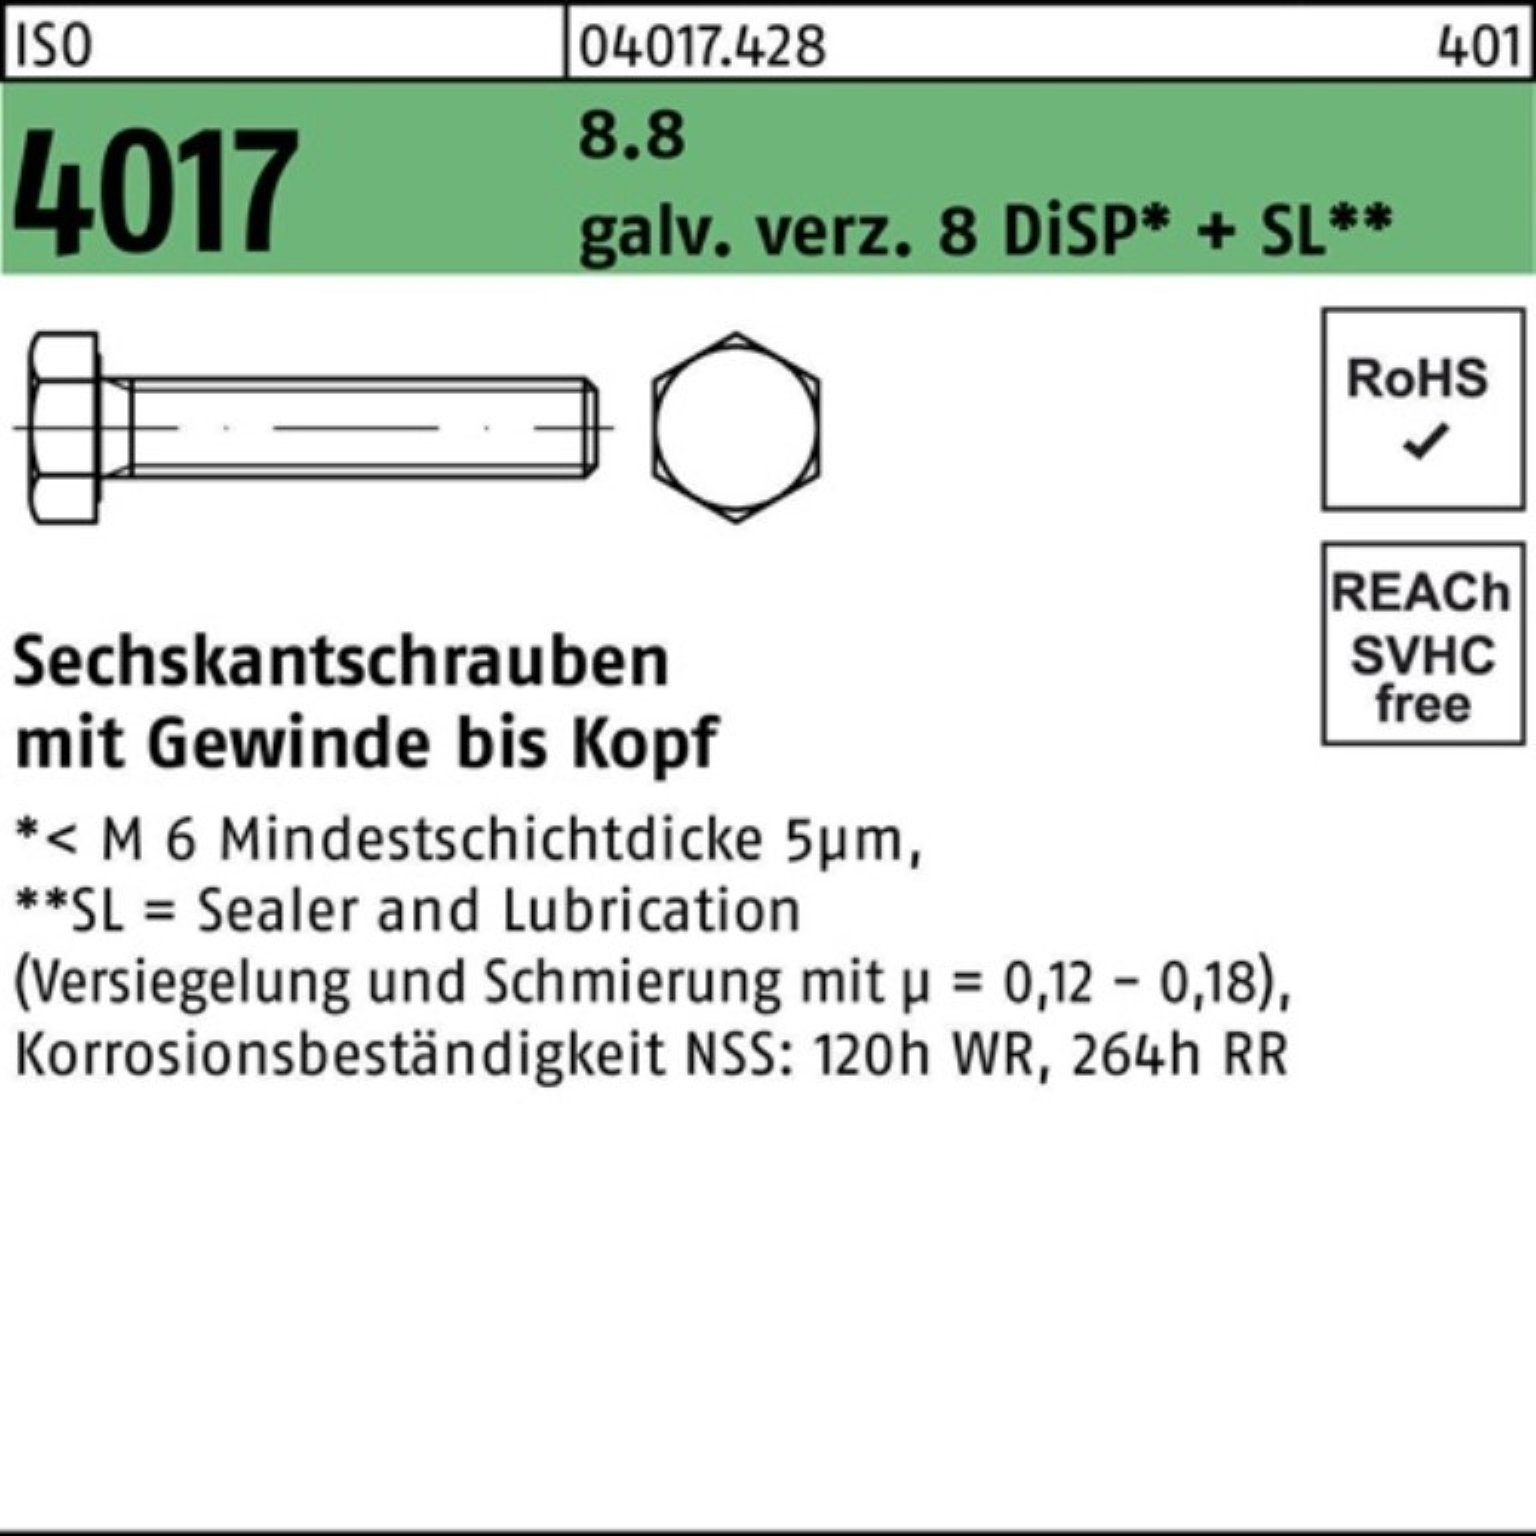 VG 80 Bufab 8.8 DiSP Pack 4017 ISO M24x galv.verz. 100er 8 Sechskantschraube Sechskantschraube